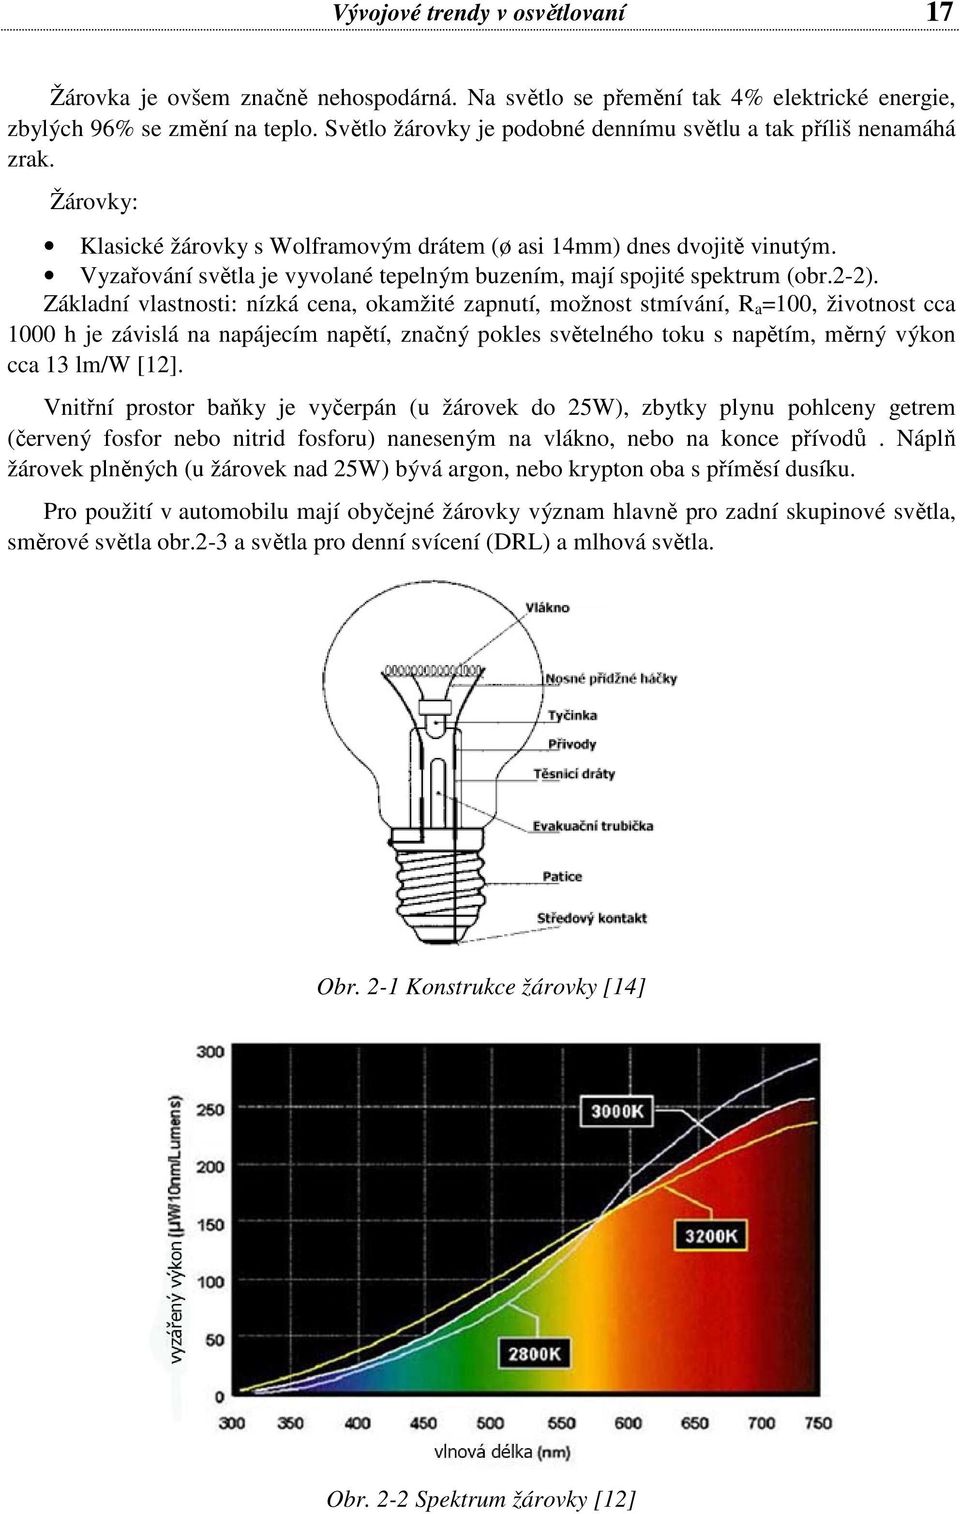 Vyzařování světla je vyvolané tepelným buzením, mají spojité spektrum (obr.2-2).